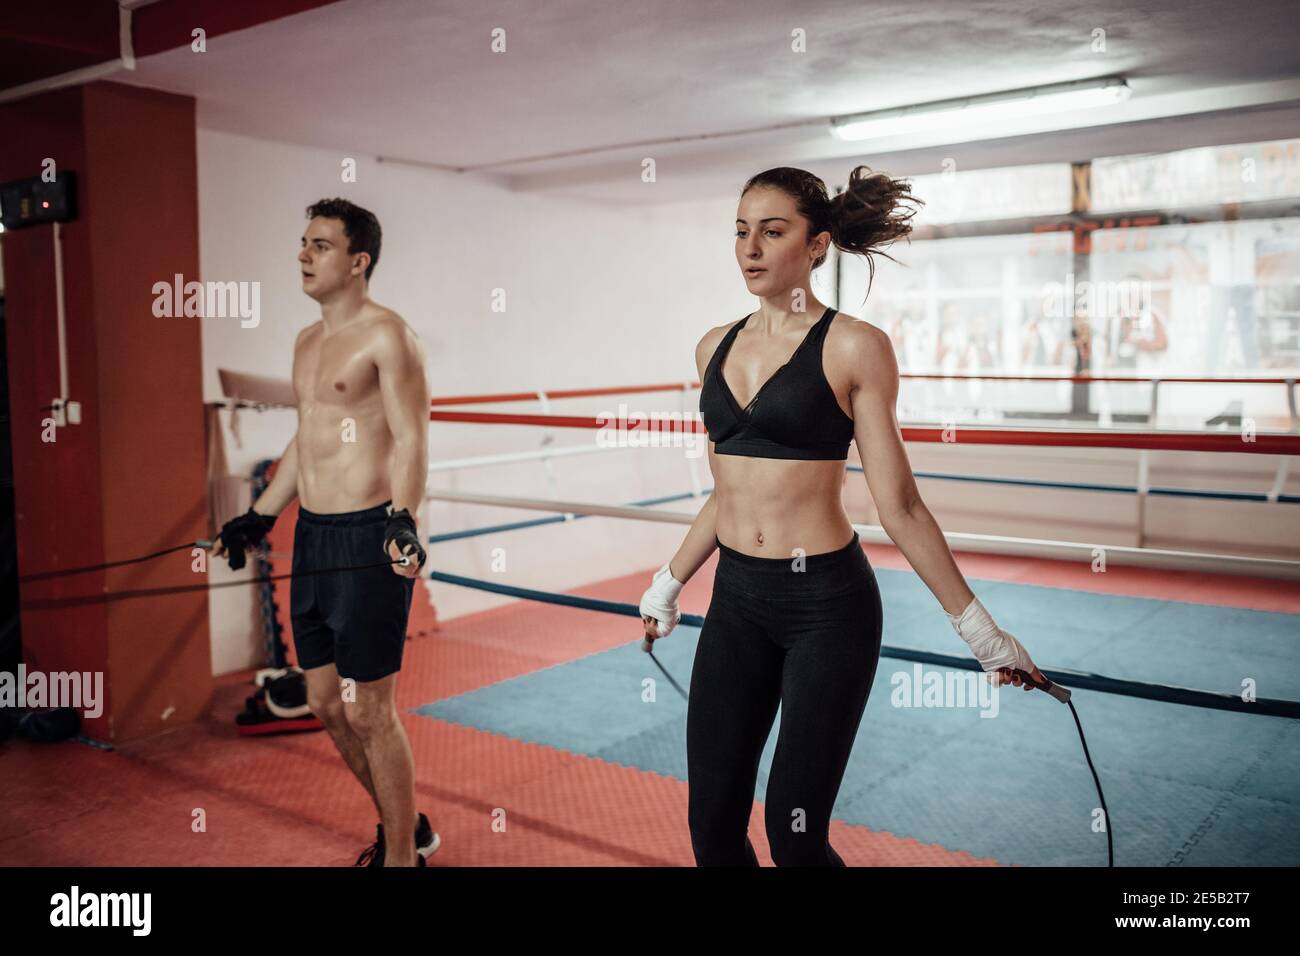 Un homme et une femme sautent ensemble dans un club sportif. Un couple s'entraînant avec une corde à sauter dans une salle de gym. Banque D'Images